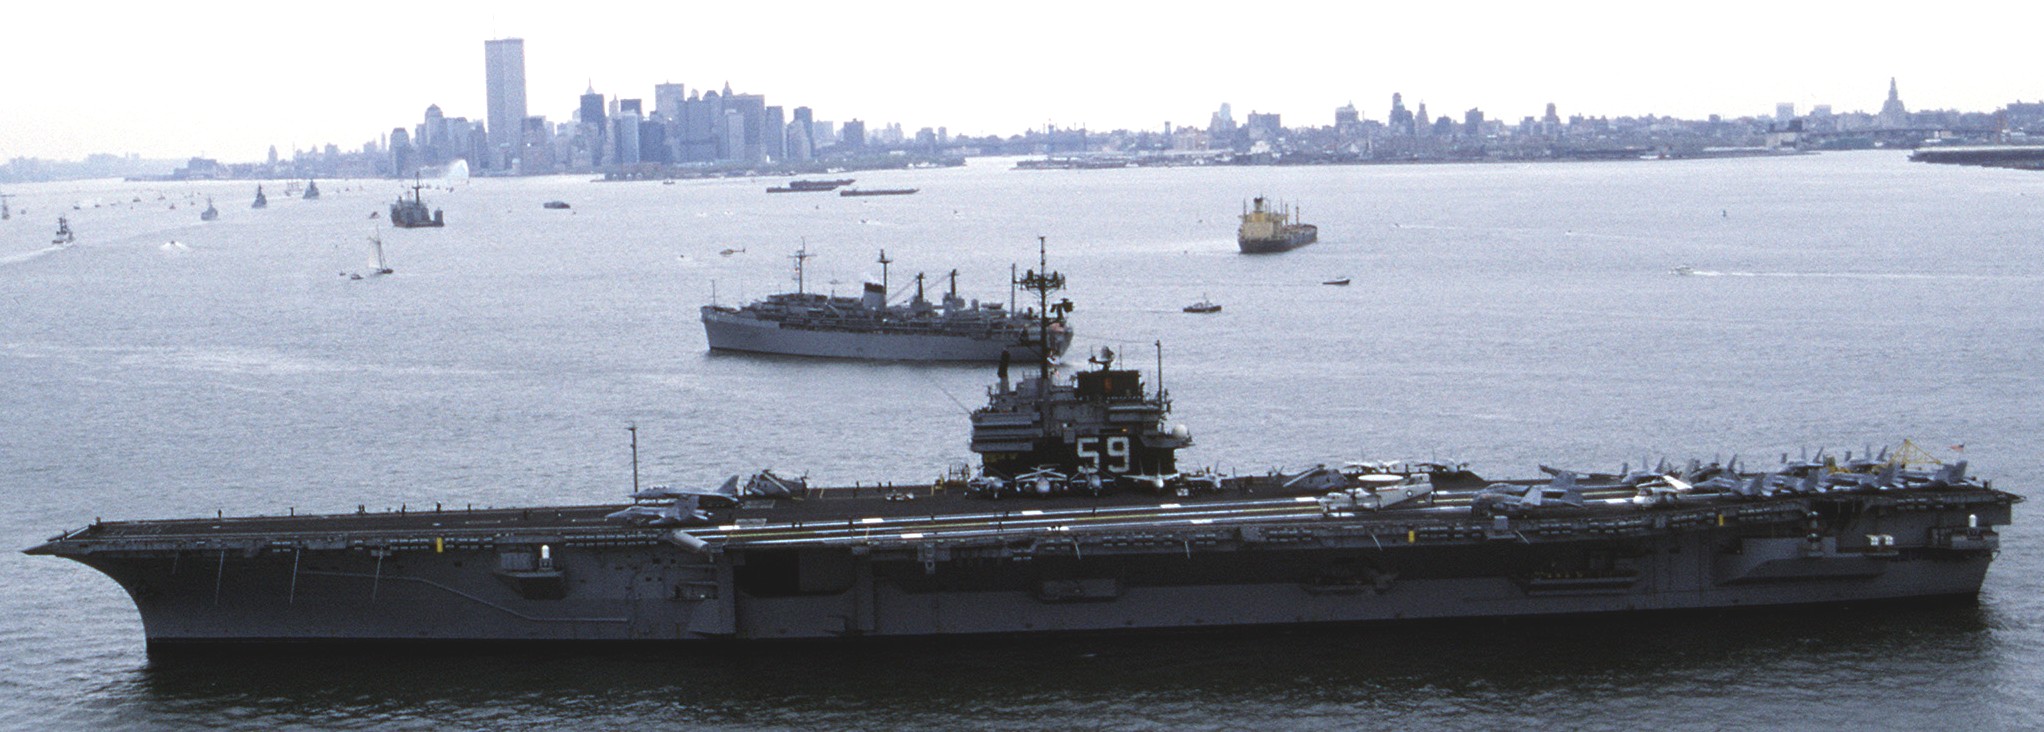 cv-59 uss forrestal aircraft carrier us navy fleet week new york 1989 96